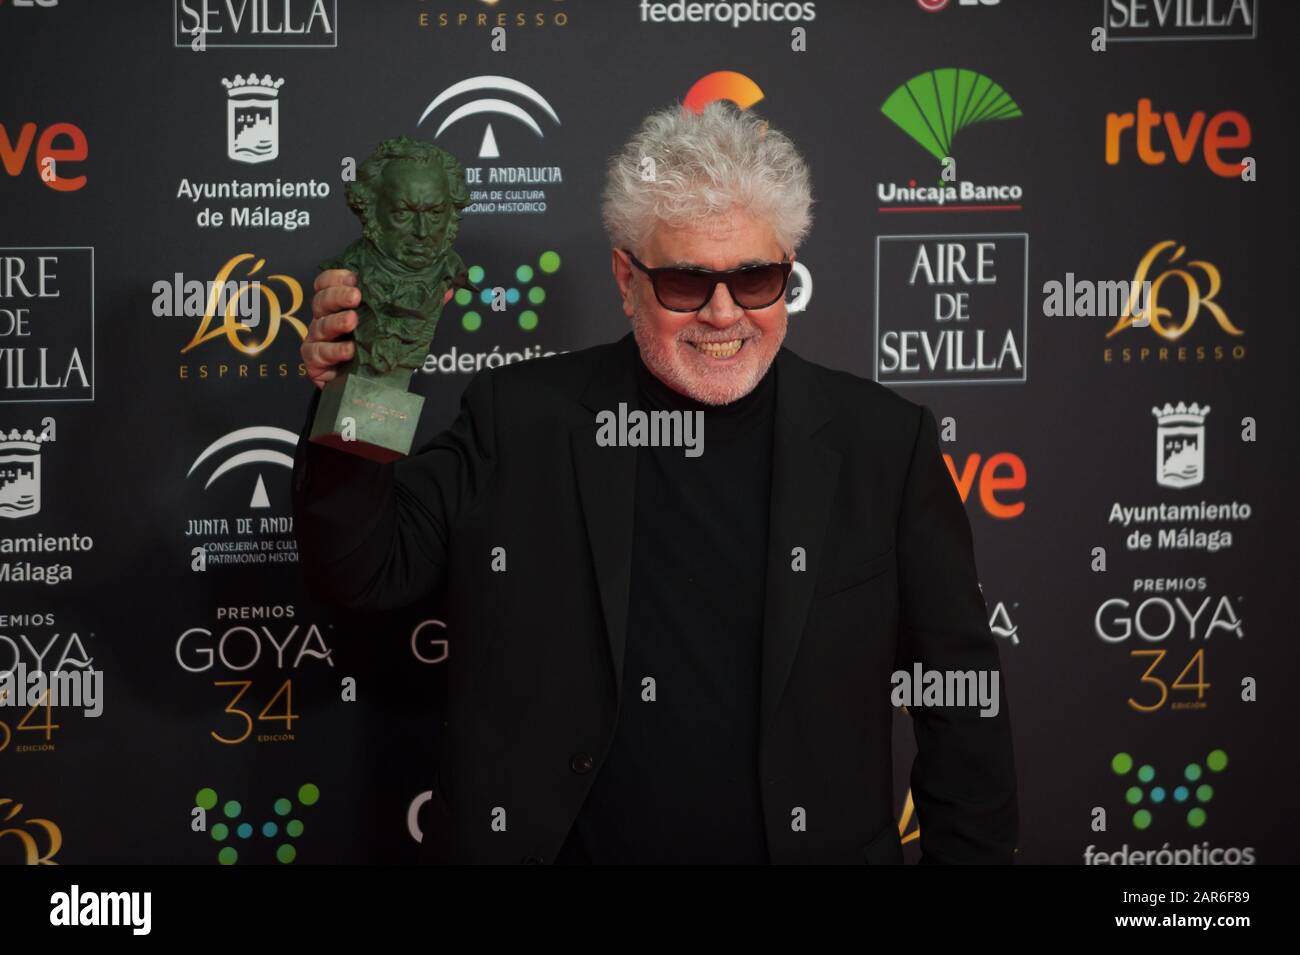 Le directeur espagnol Pedro Almodovar pose avec son prix Goya pour le meilleur directeur de 'Dilor y Gloria' (Pain et gloire) lors de la 34ème édition de la cérémonie des Prix Goya de l'Académie du film espagnol, au palais sportif Jose Maria Martin Carpena. Banque D'Images